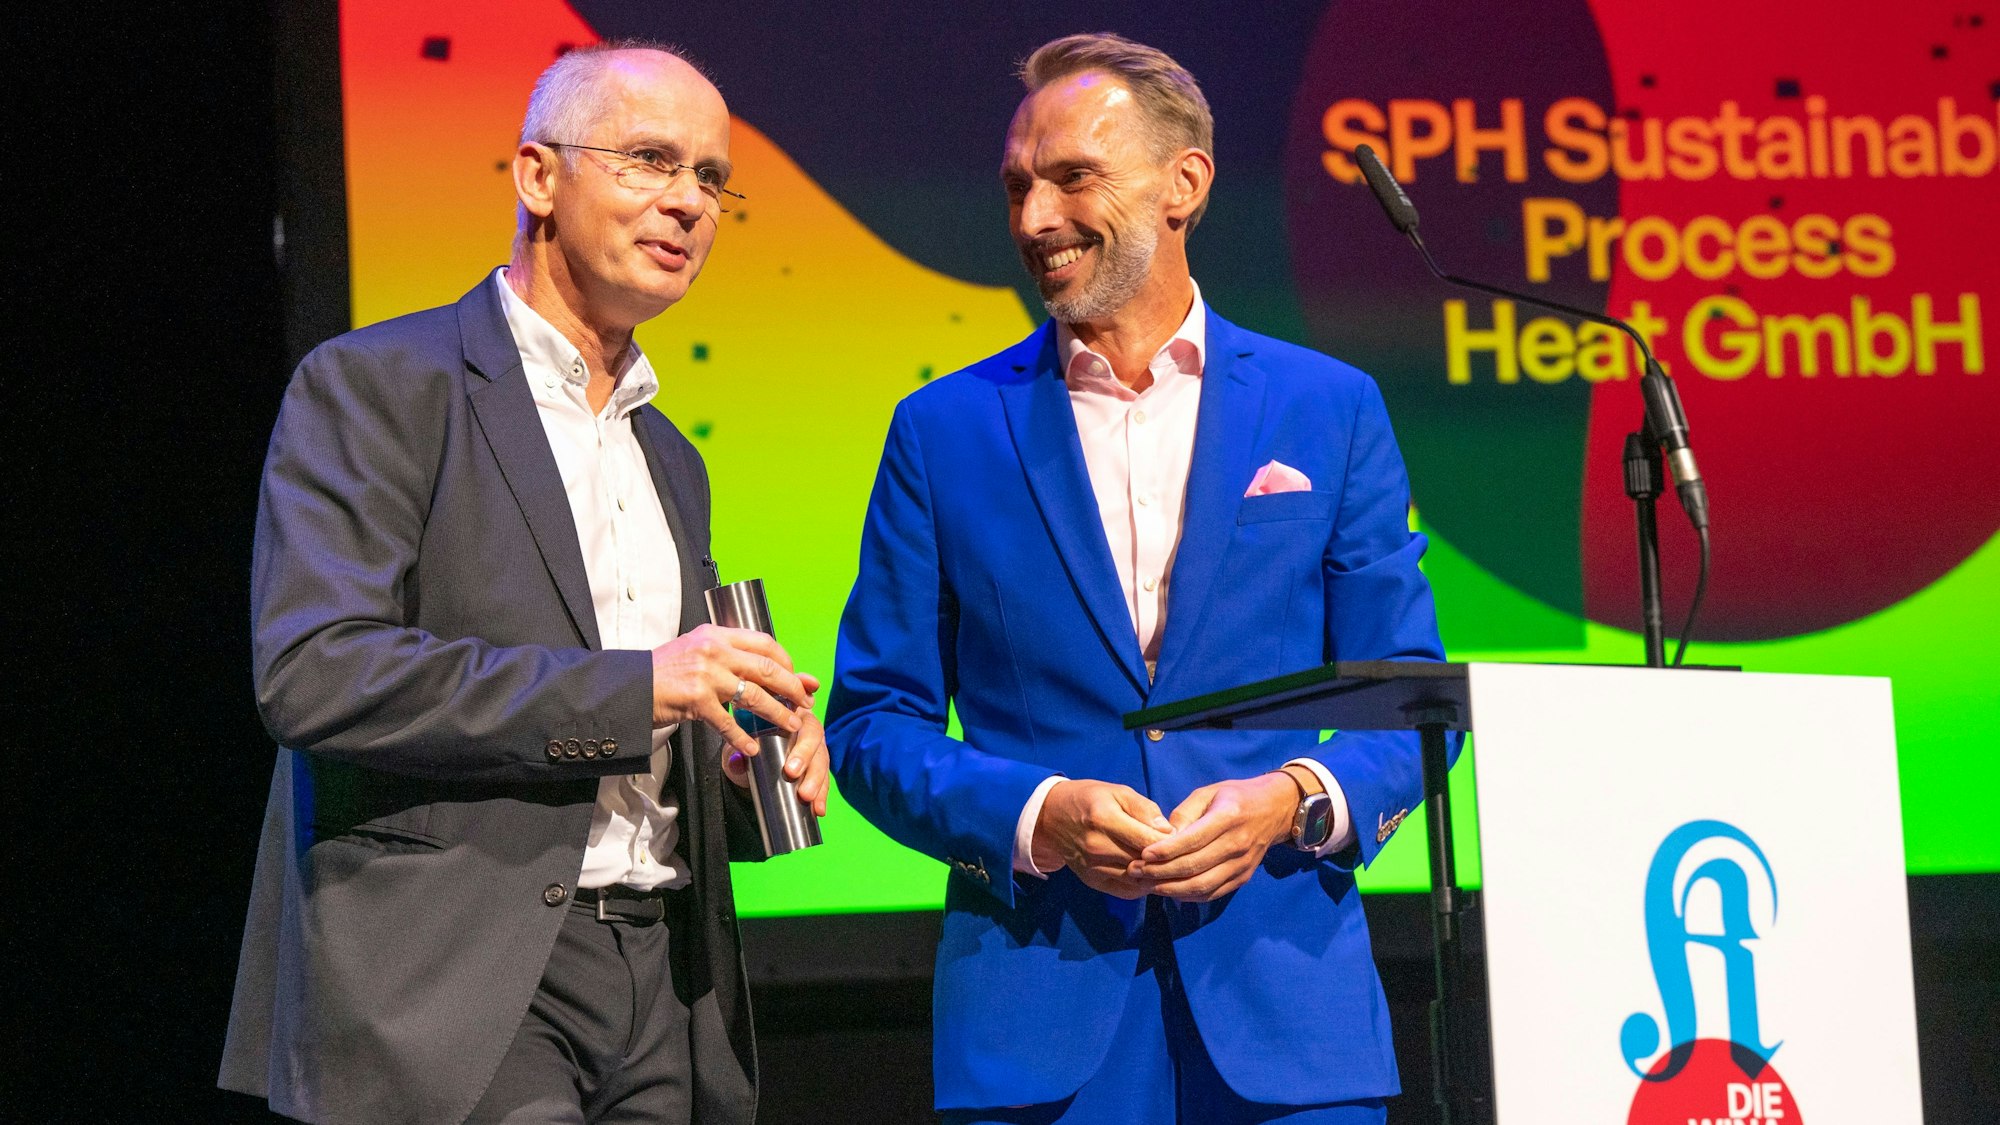 Kategorie Gründung: SPH Sustainabilty Process Heat GmbH gewinnt, überreicht wird der Preis von Dr. Manfred Janssen.